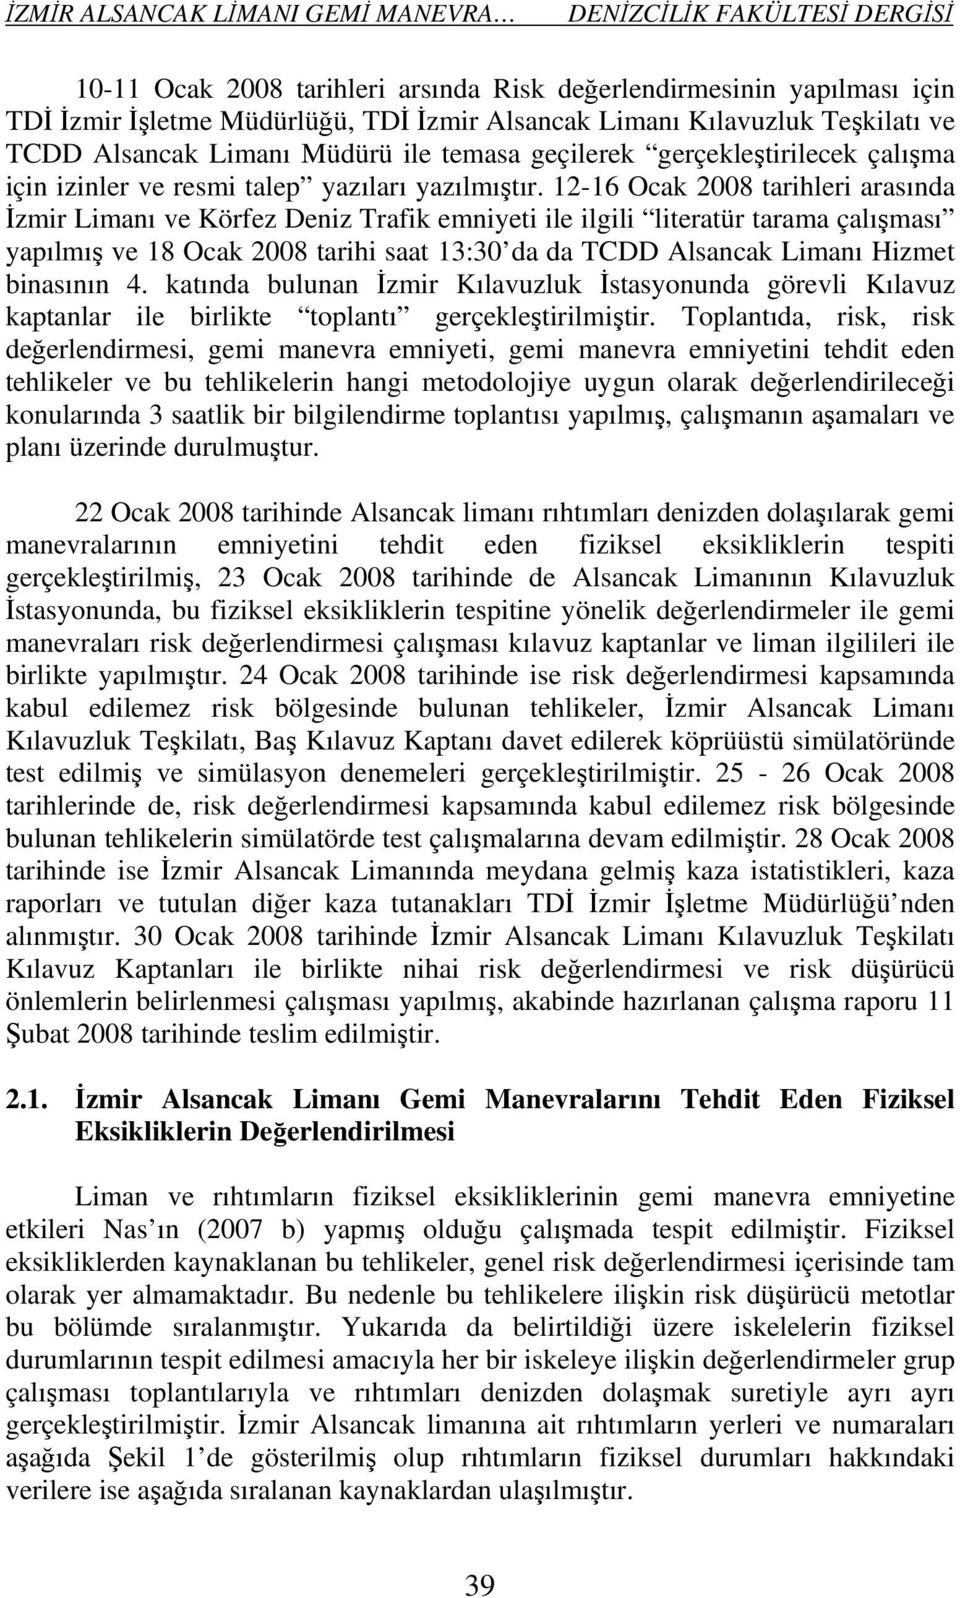 12-16 Ocak 2008 tarihleri arasında İzmir Limanı ve Körfez Deniz Trafik emniyeti ile ilgili literatür tarama çalışması yapılmış ve 18 Ocak 2008 tarihi saat 13:30 da da TCDD Alsancak Limanı Hizmet